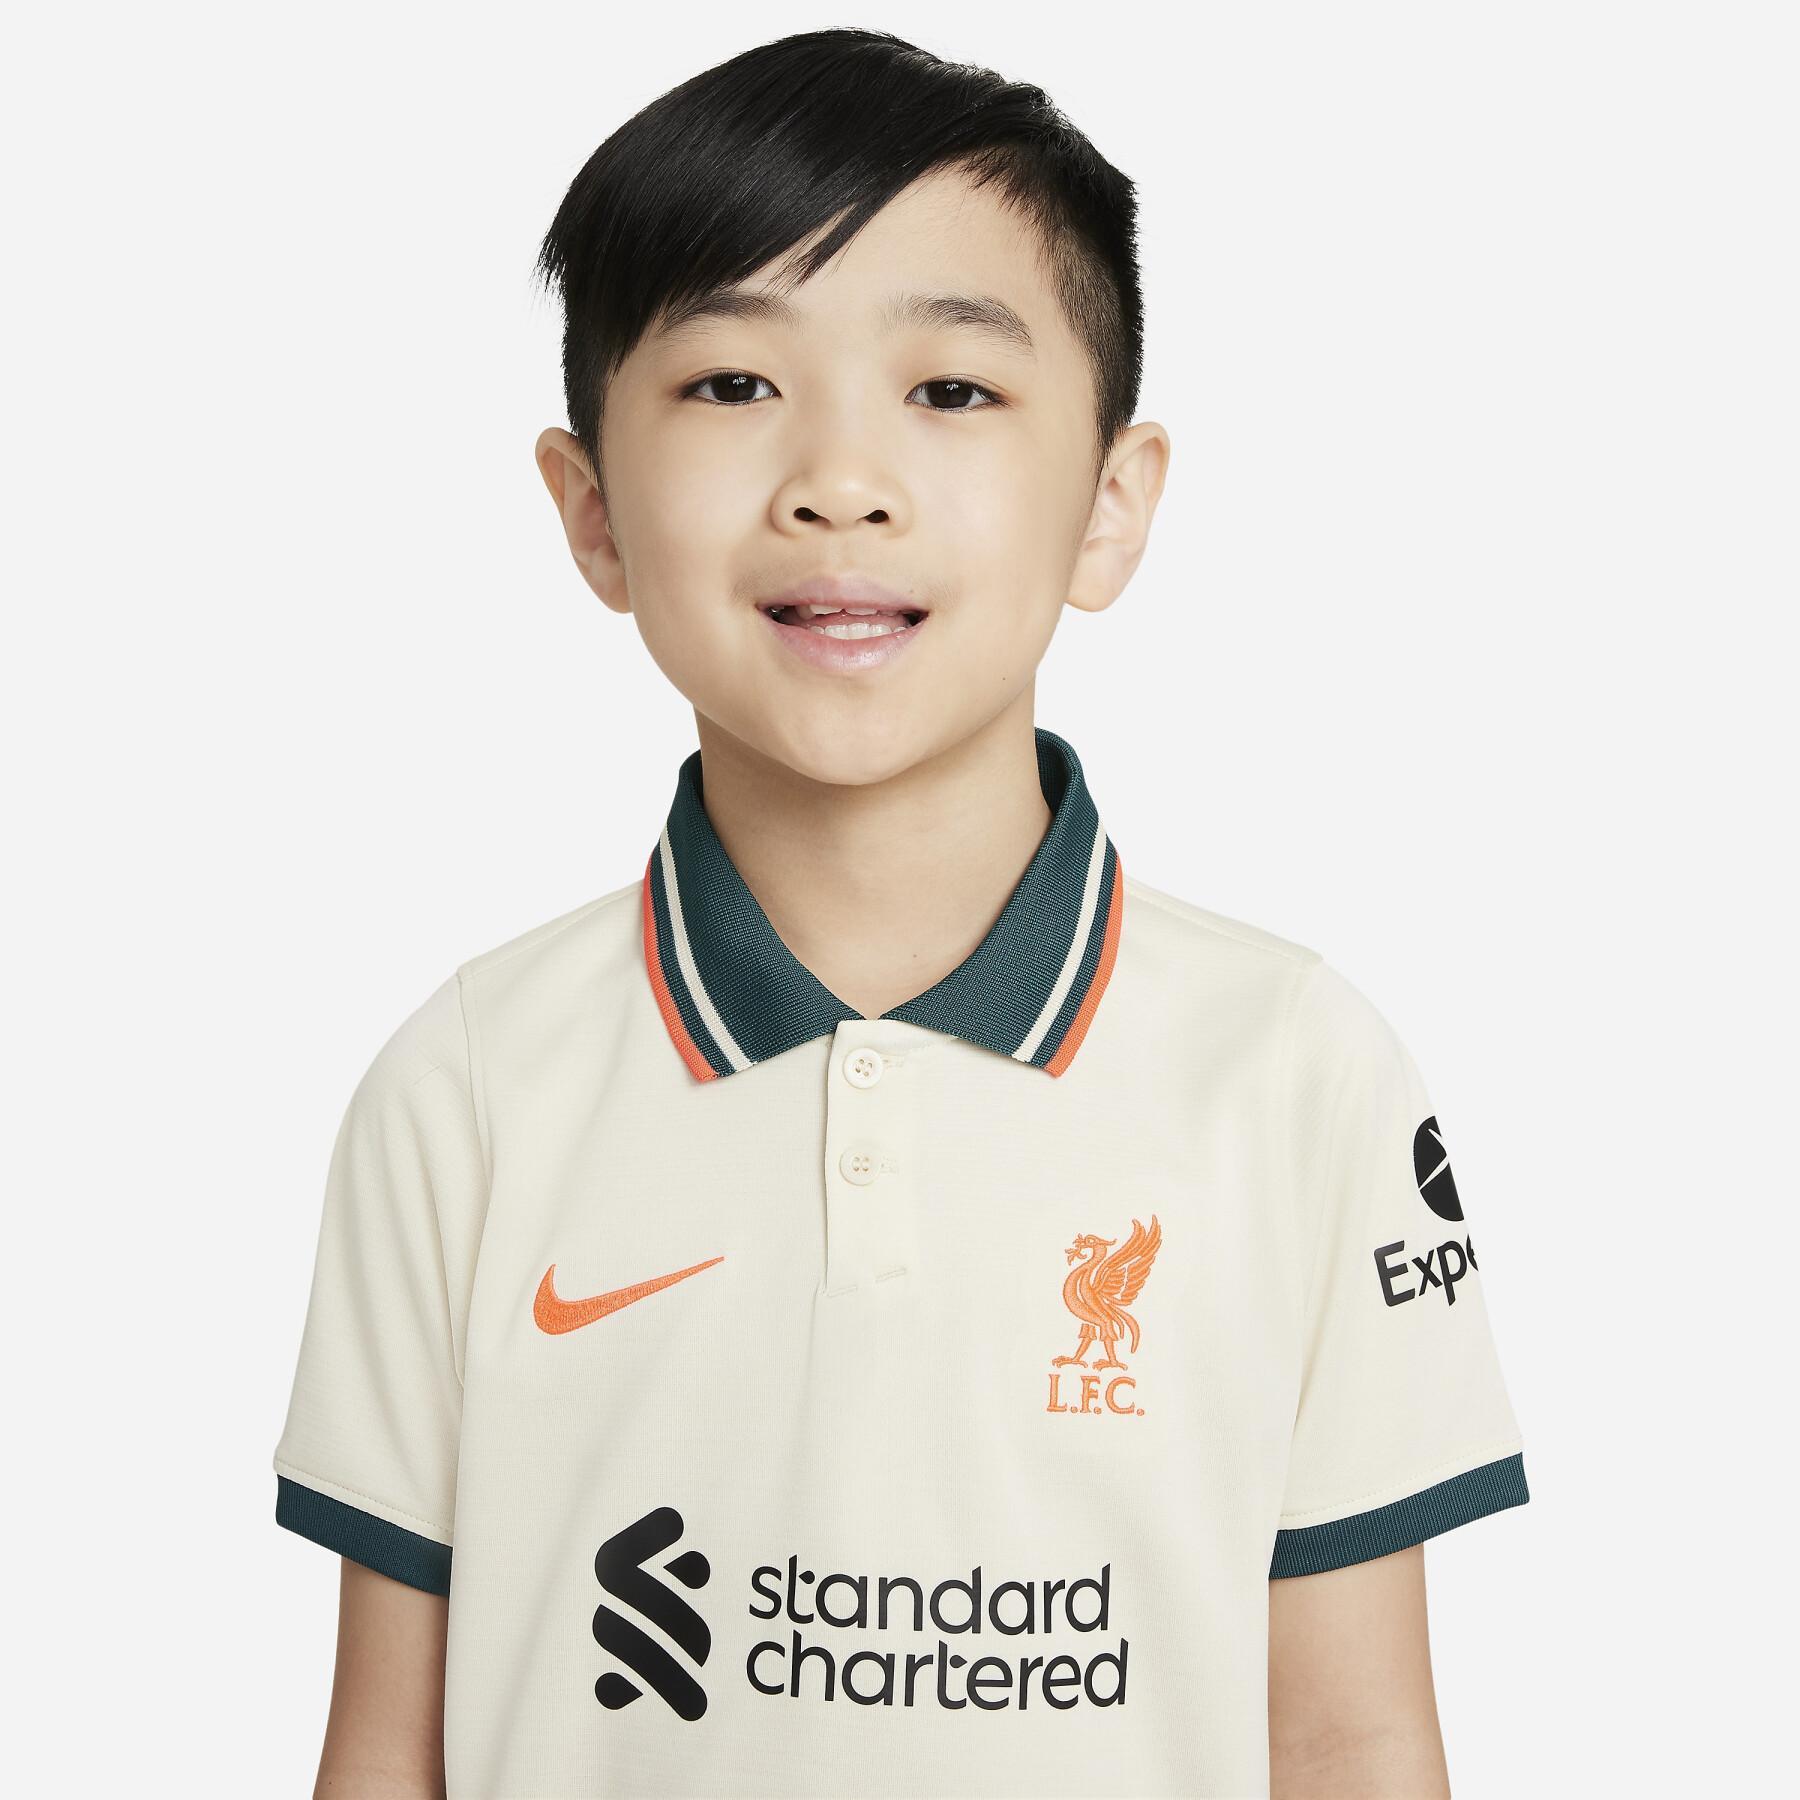 Mini-kit para crianças ao ar livre Liverpool FC 2021/22